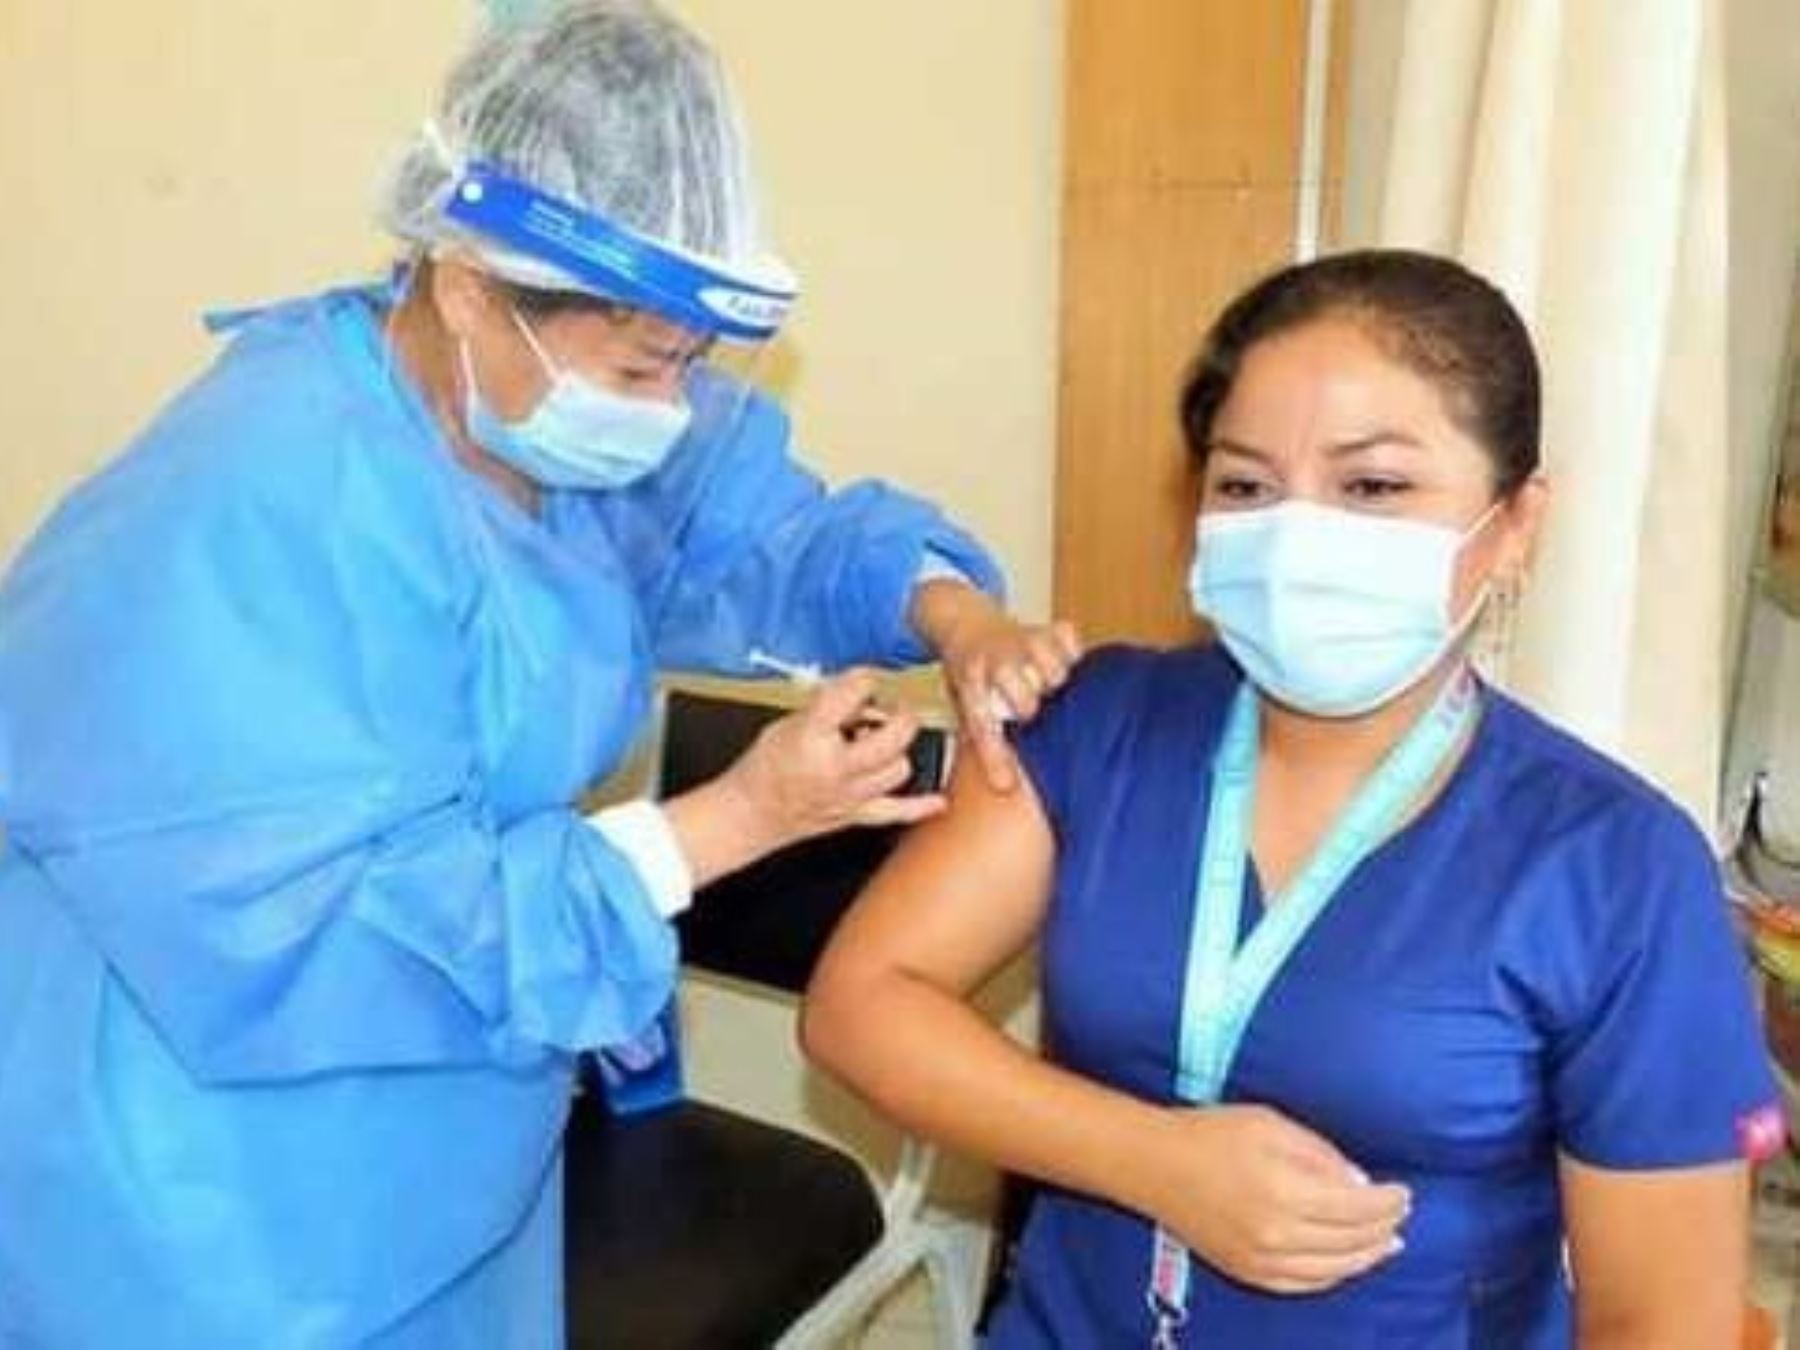 Más d e 14,000 profesionales de la salud de Piura fueron vacunados contra la pandemia de covid-19, destacó el Ministerio de Salud. ANDINA/Difusión